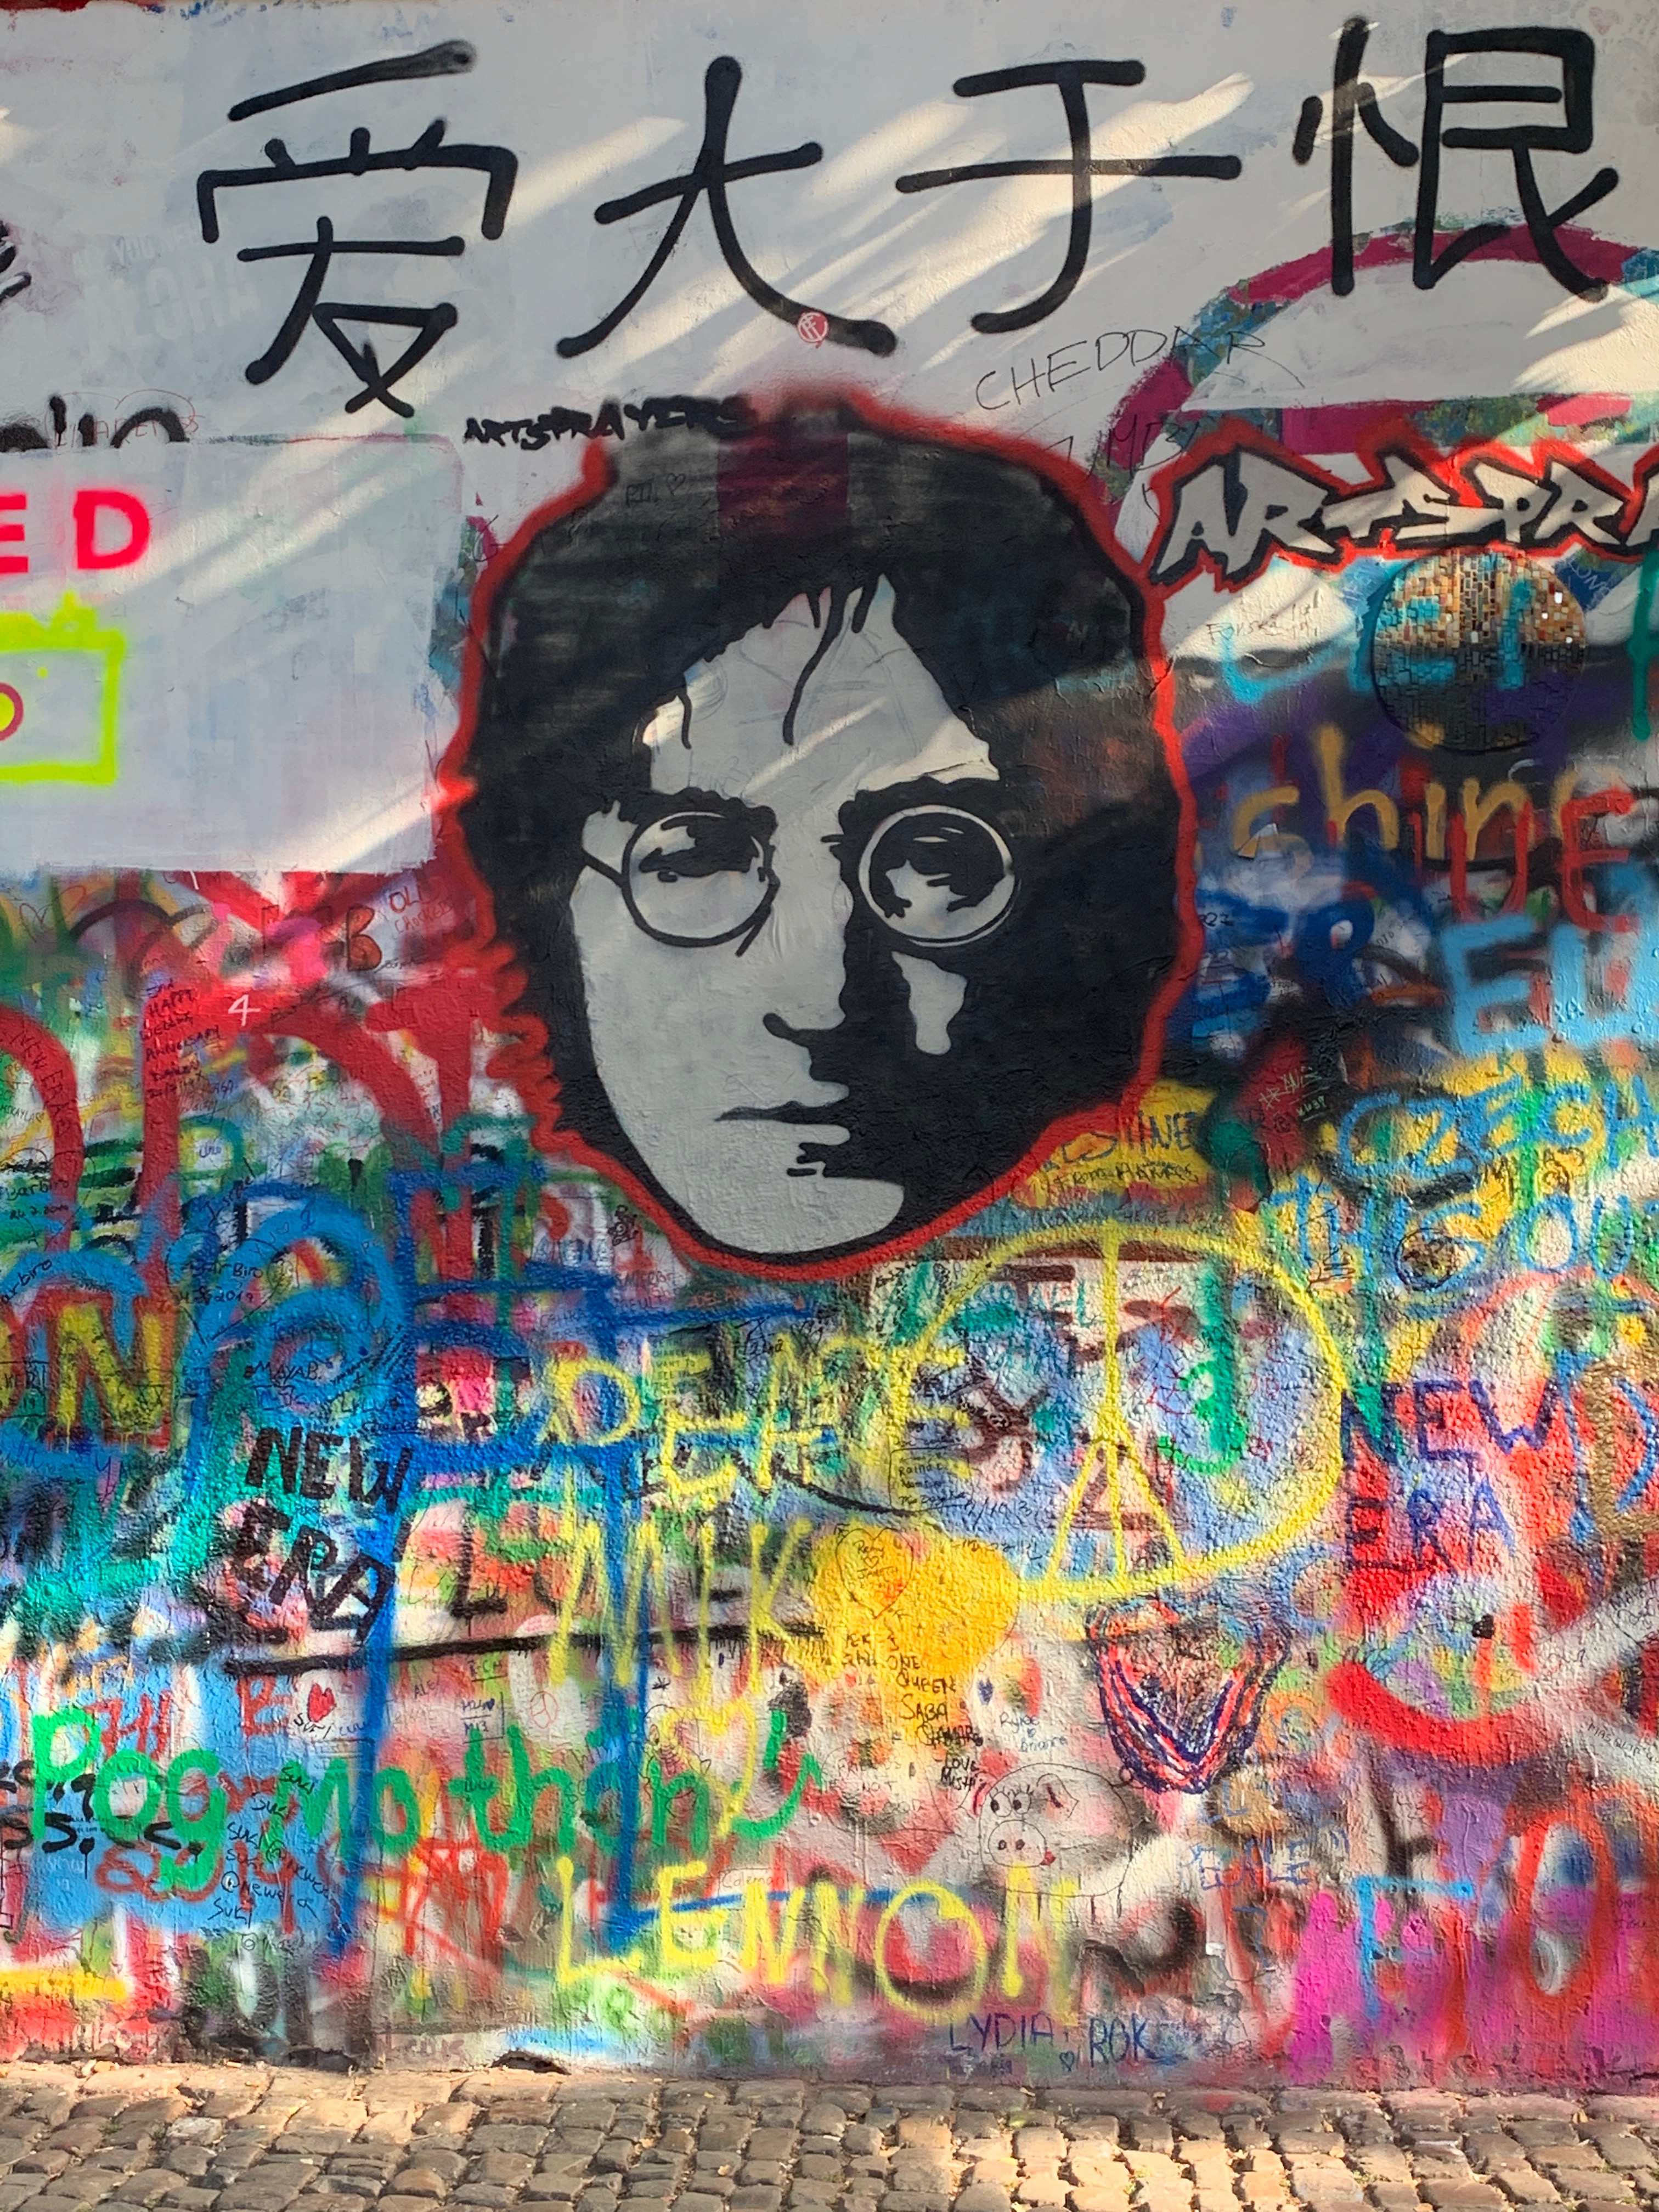 John Lennon Wall in Prague